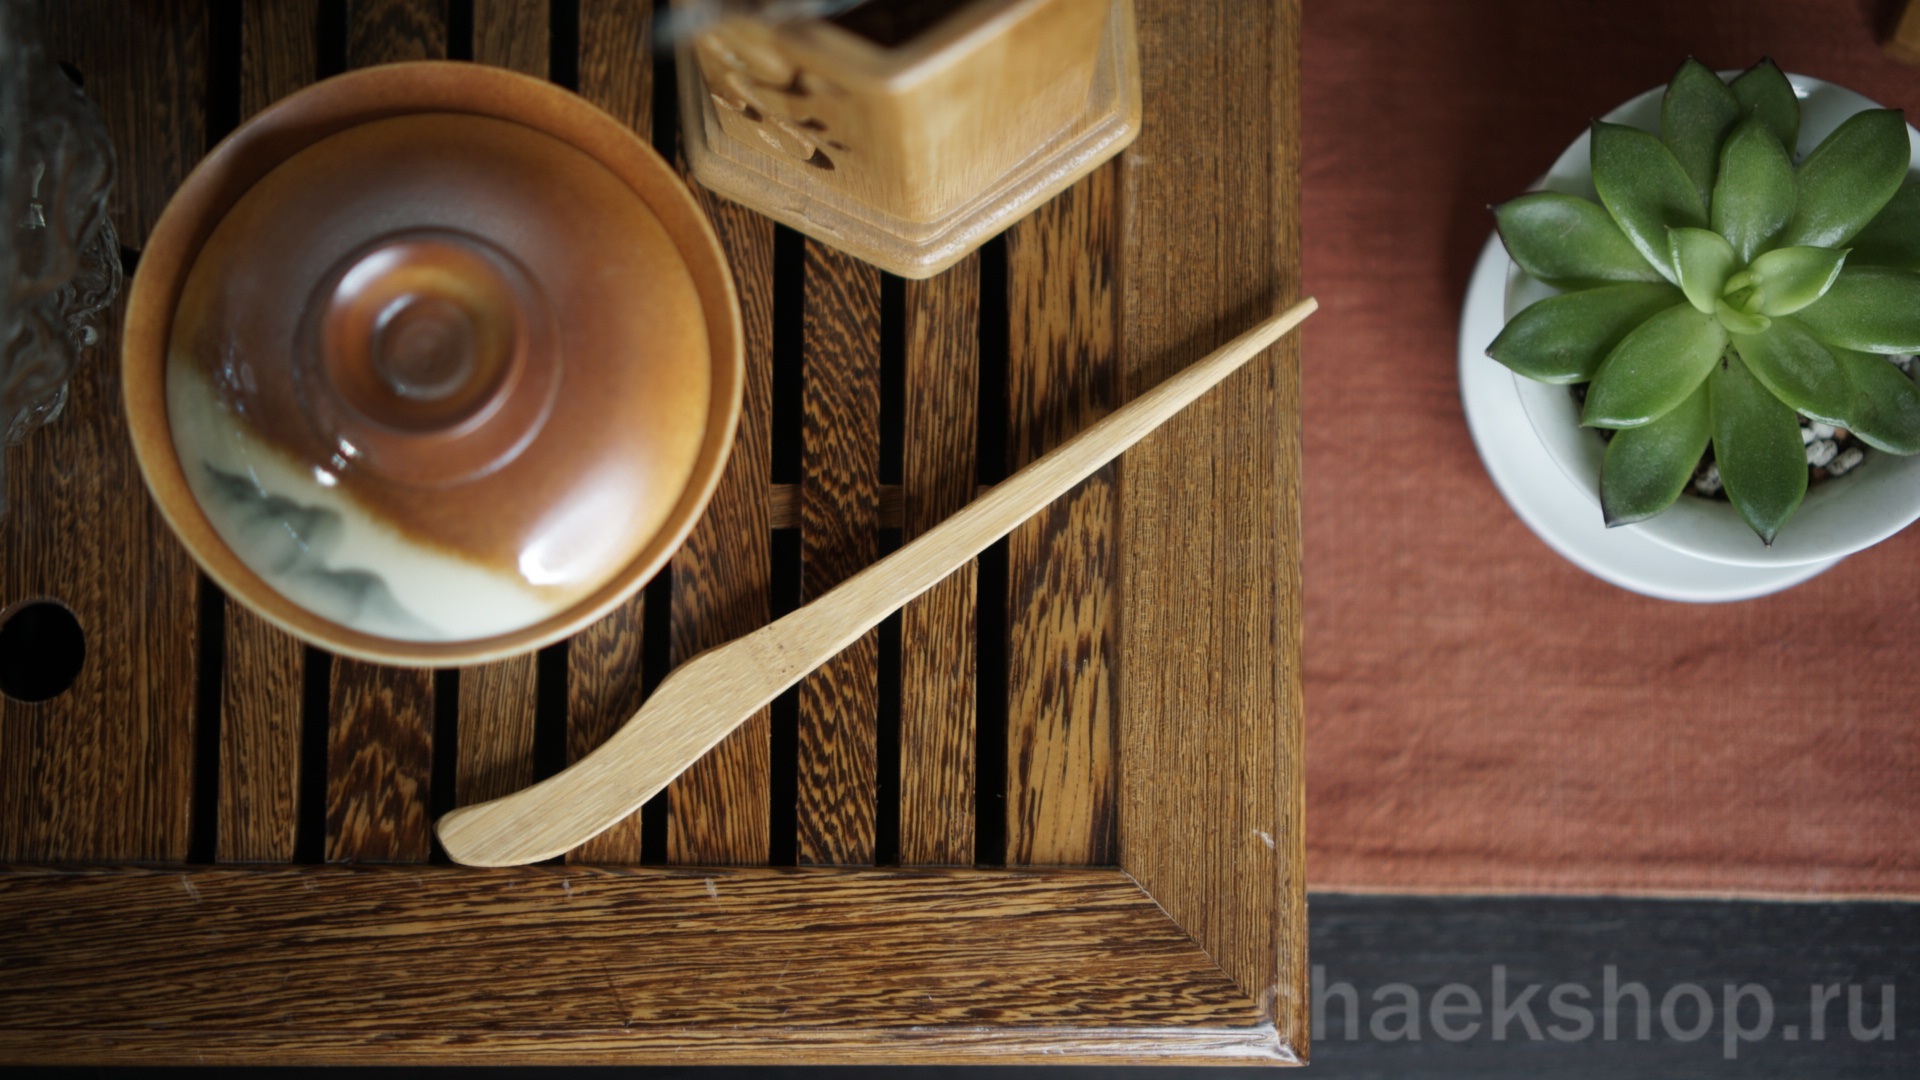   Игла (чачжэнь 茶针cházhēn) — двусторонний инструмент. Поможет прочистить носик чайника или достать испитый лист из посуды.